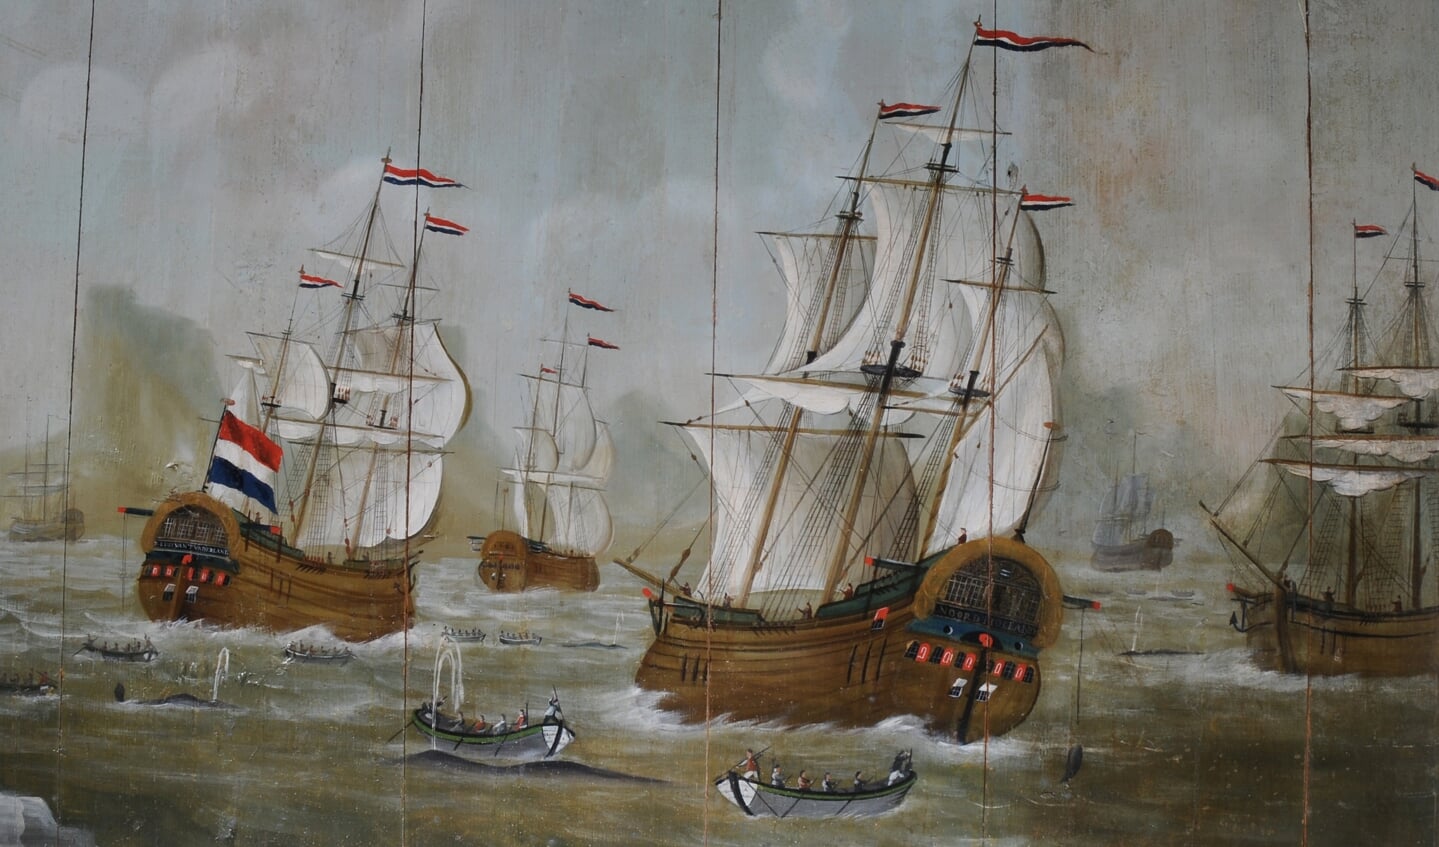 Waarschijnlijk vier bootschepen van de reders Vroon en Bek uit De Rijp.